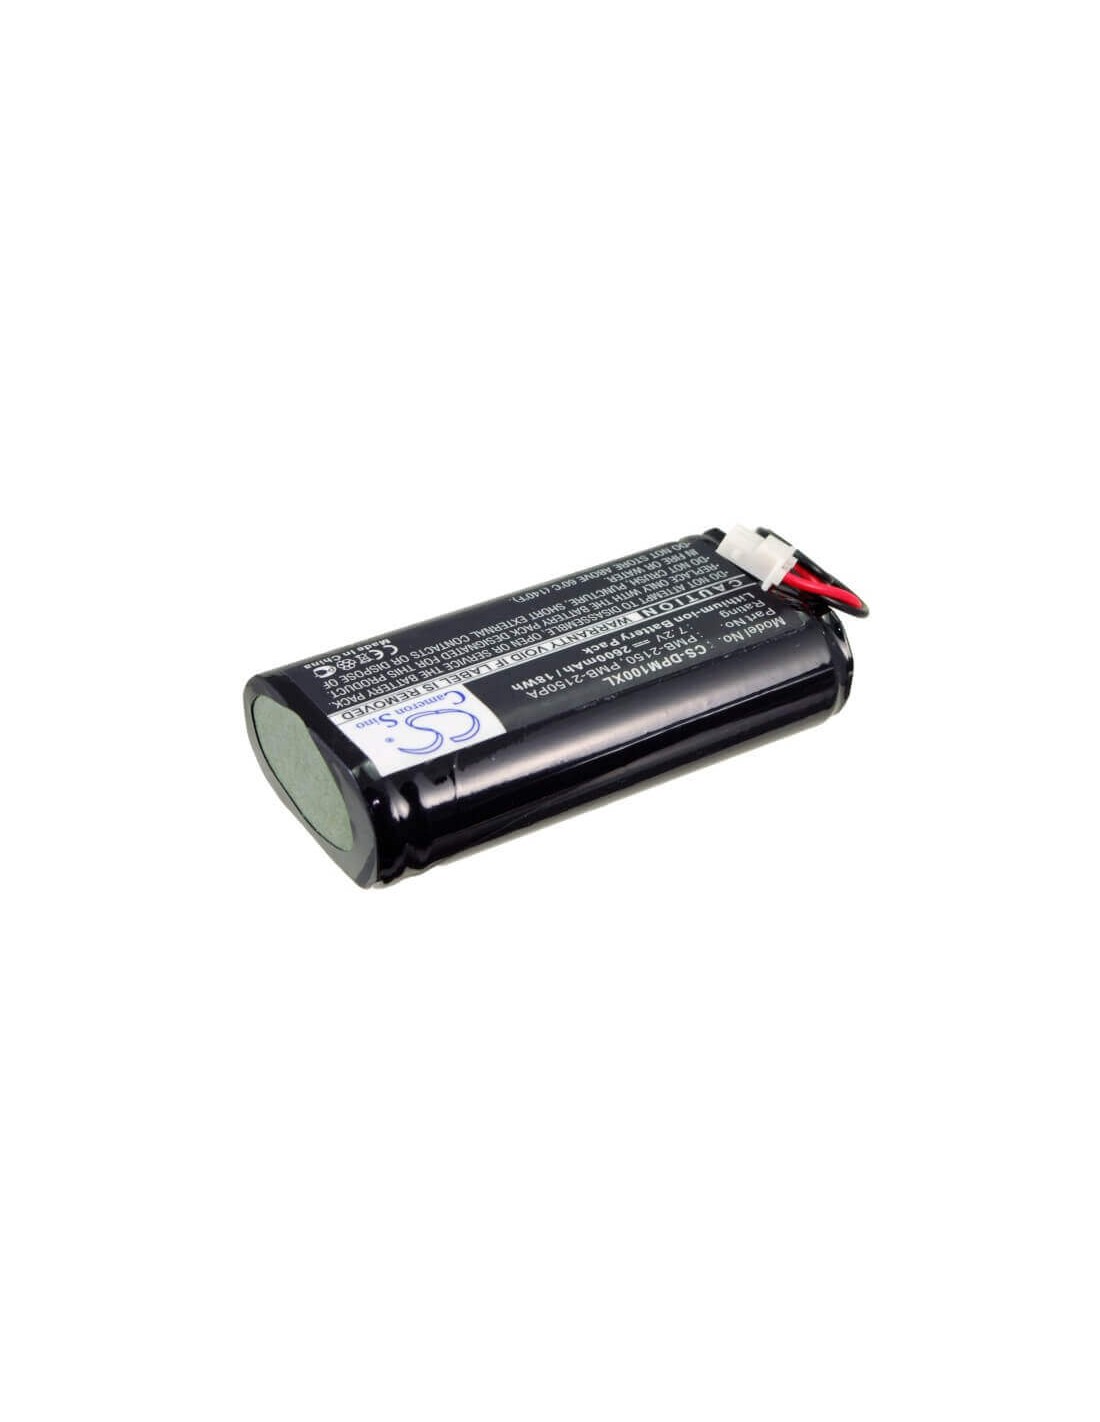 Battery for Dam Pm100-dk, Pm100ii-dk, Pm100iii-dk 7.2V, 2600mAh - 18.72Wh